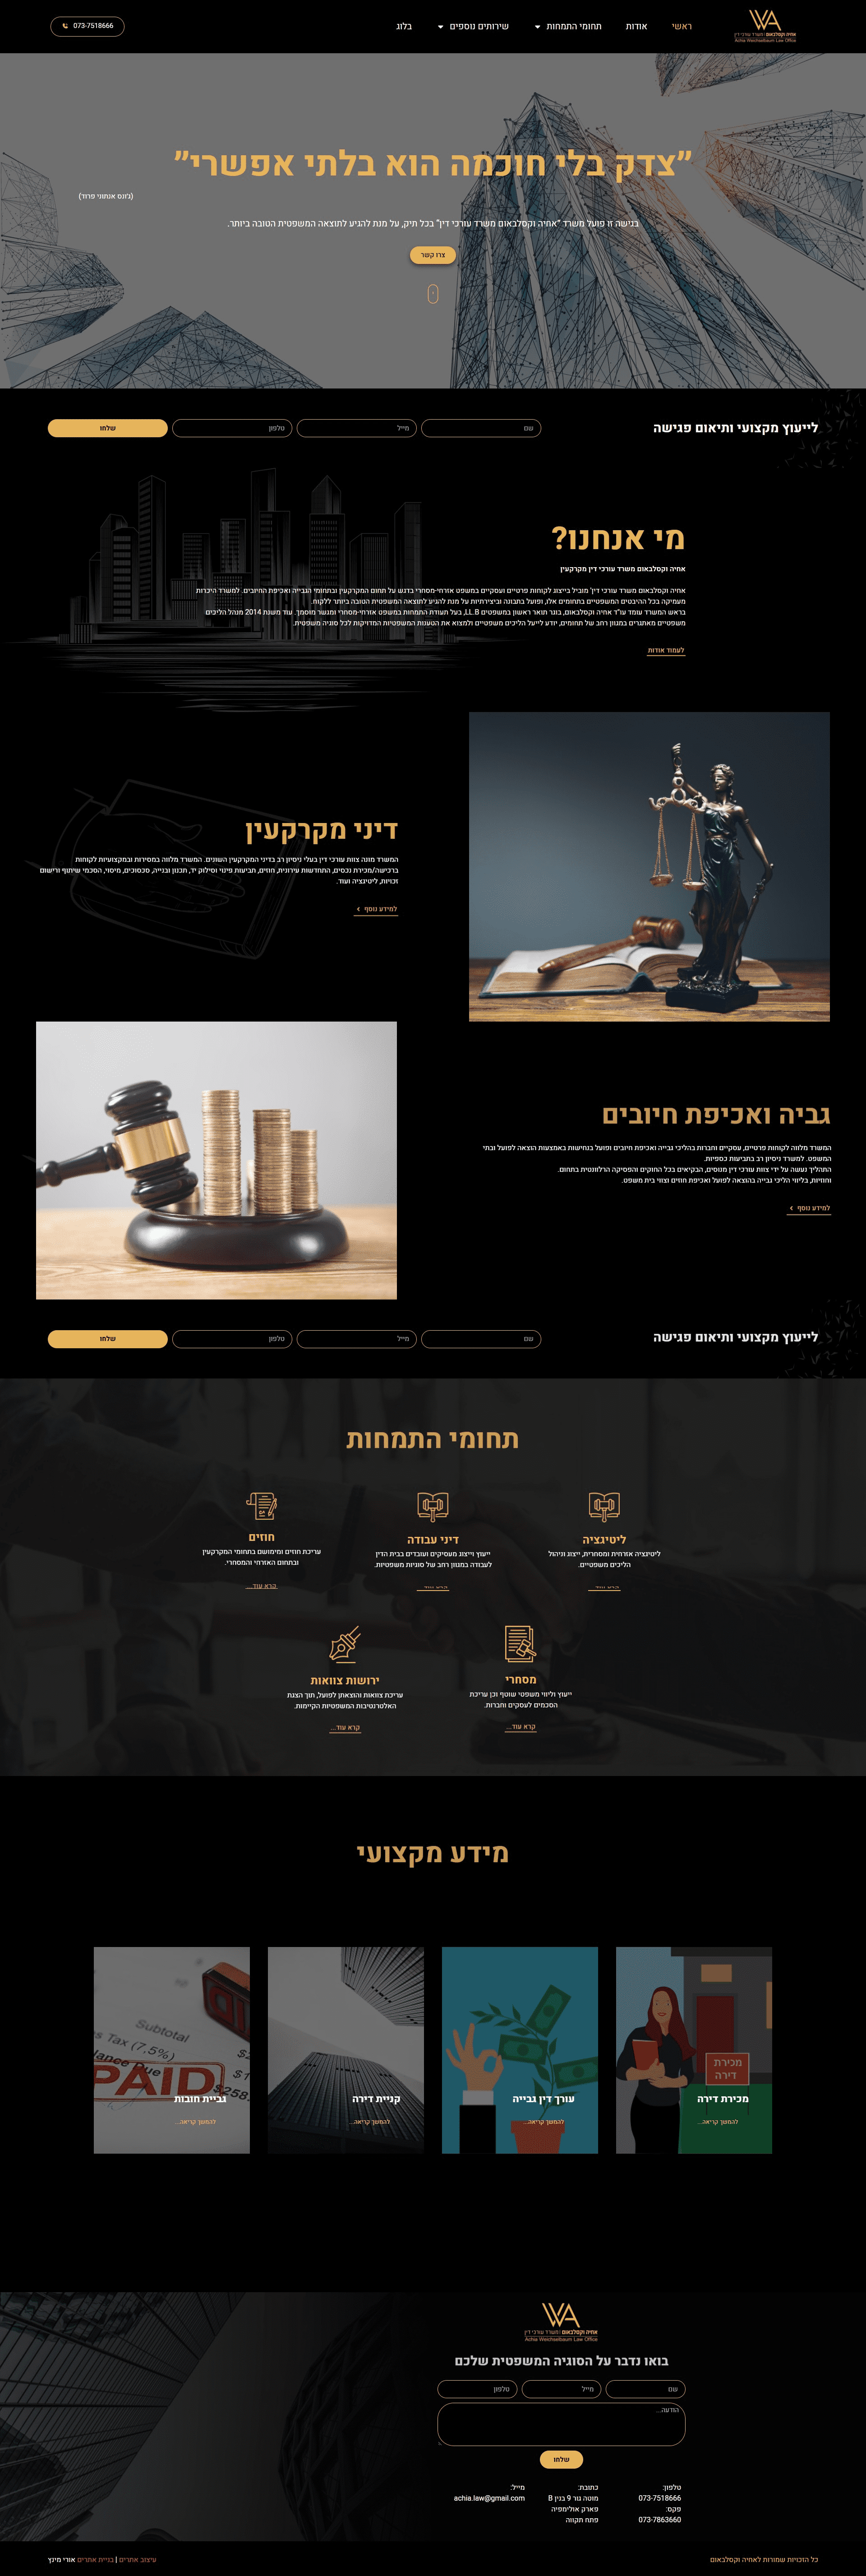 בניית אתרים לעורכי דין - אחיה וקסלבאום